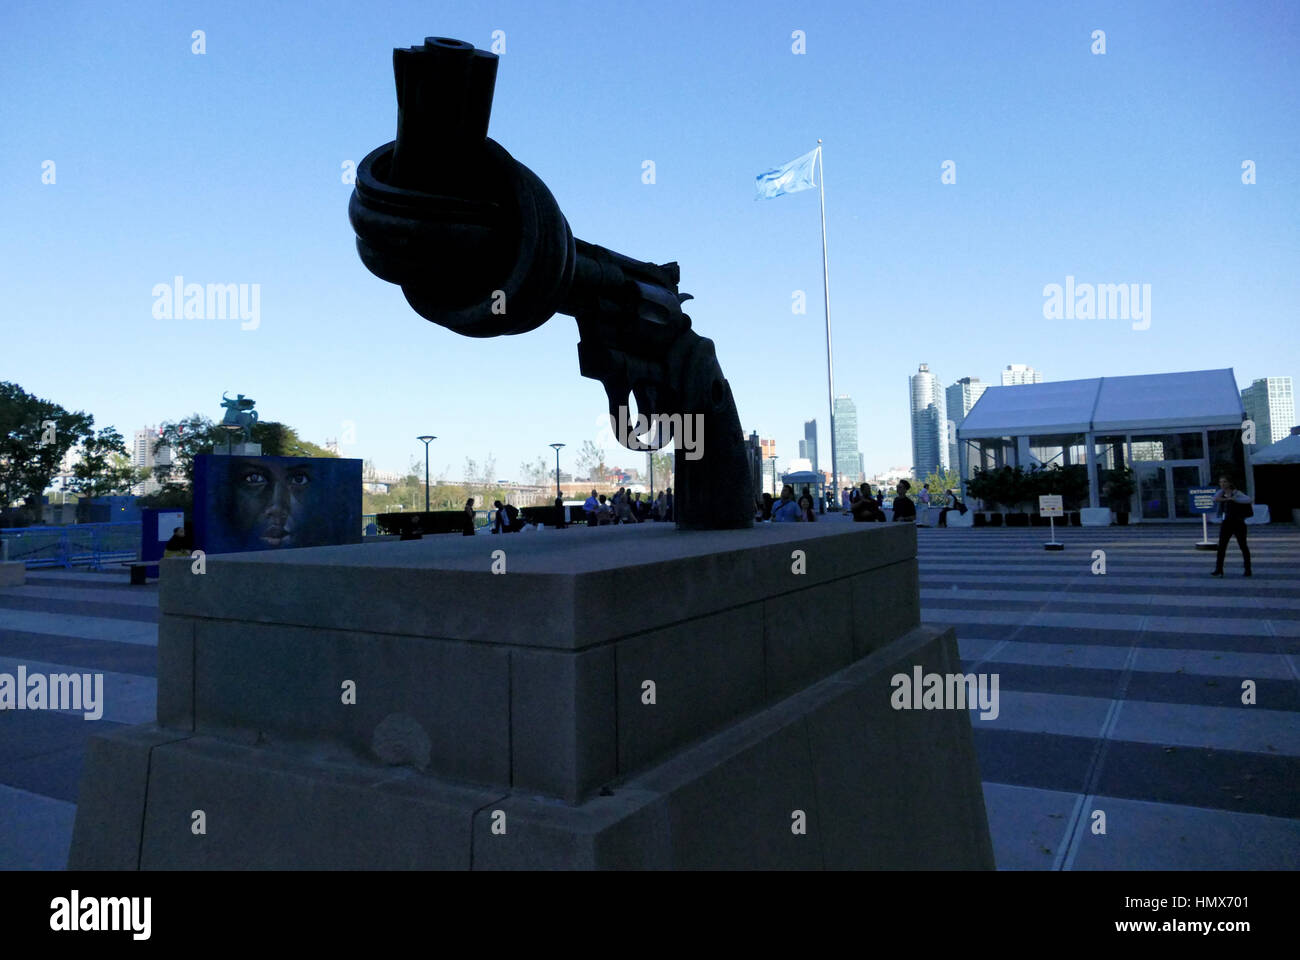 Nueva York, Estados Unidos. El 22 de septiembre de 2016 - La No-Violencia escultura en la Sede de las Naciones Unidas en Nueva York. 0,357 revólver Magnum sculptur bronce Foto de stock